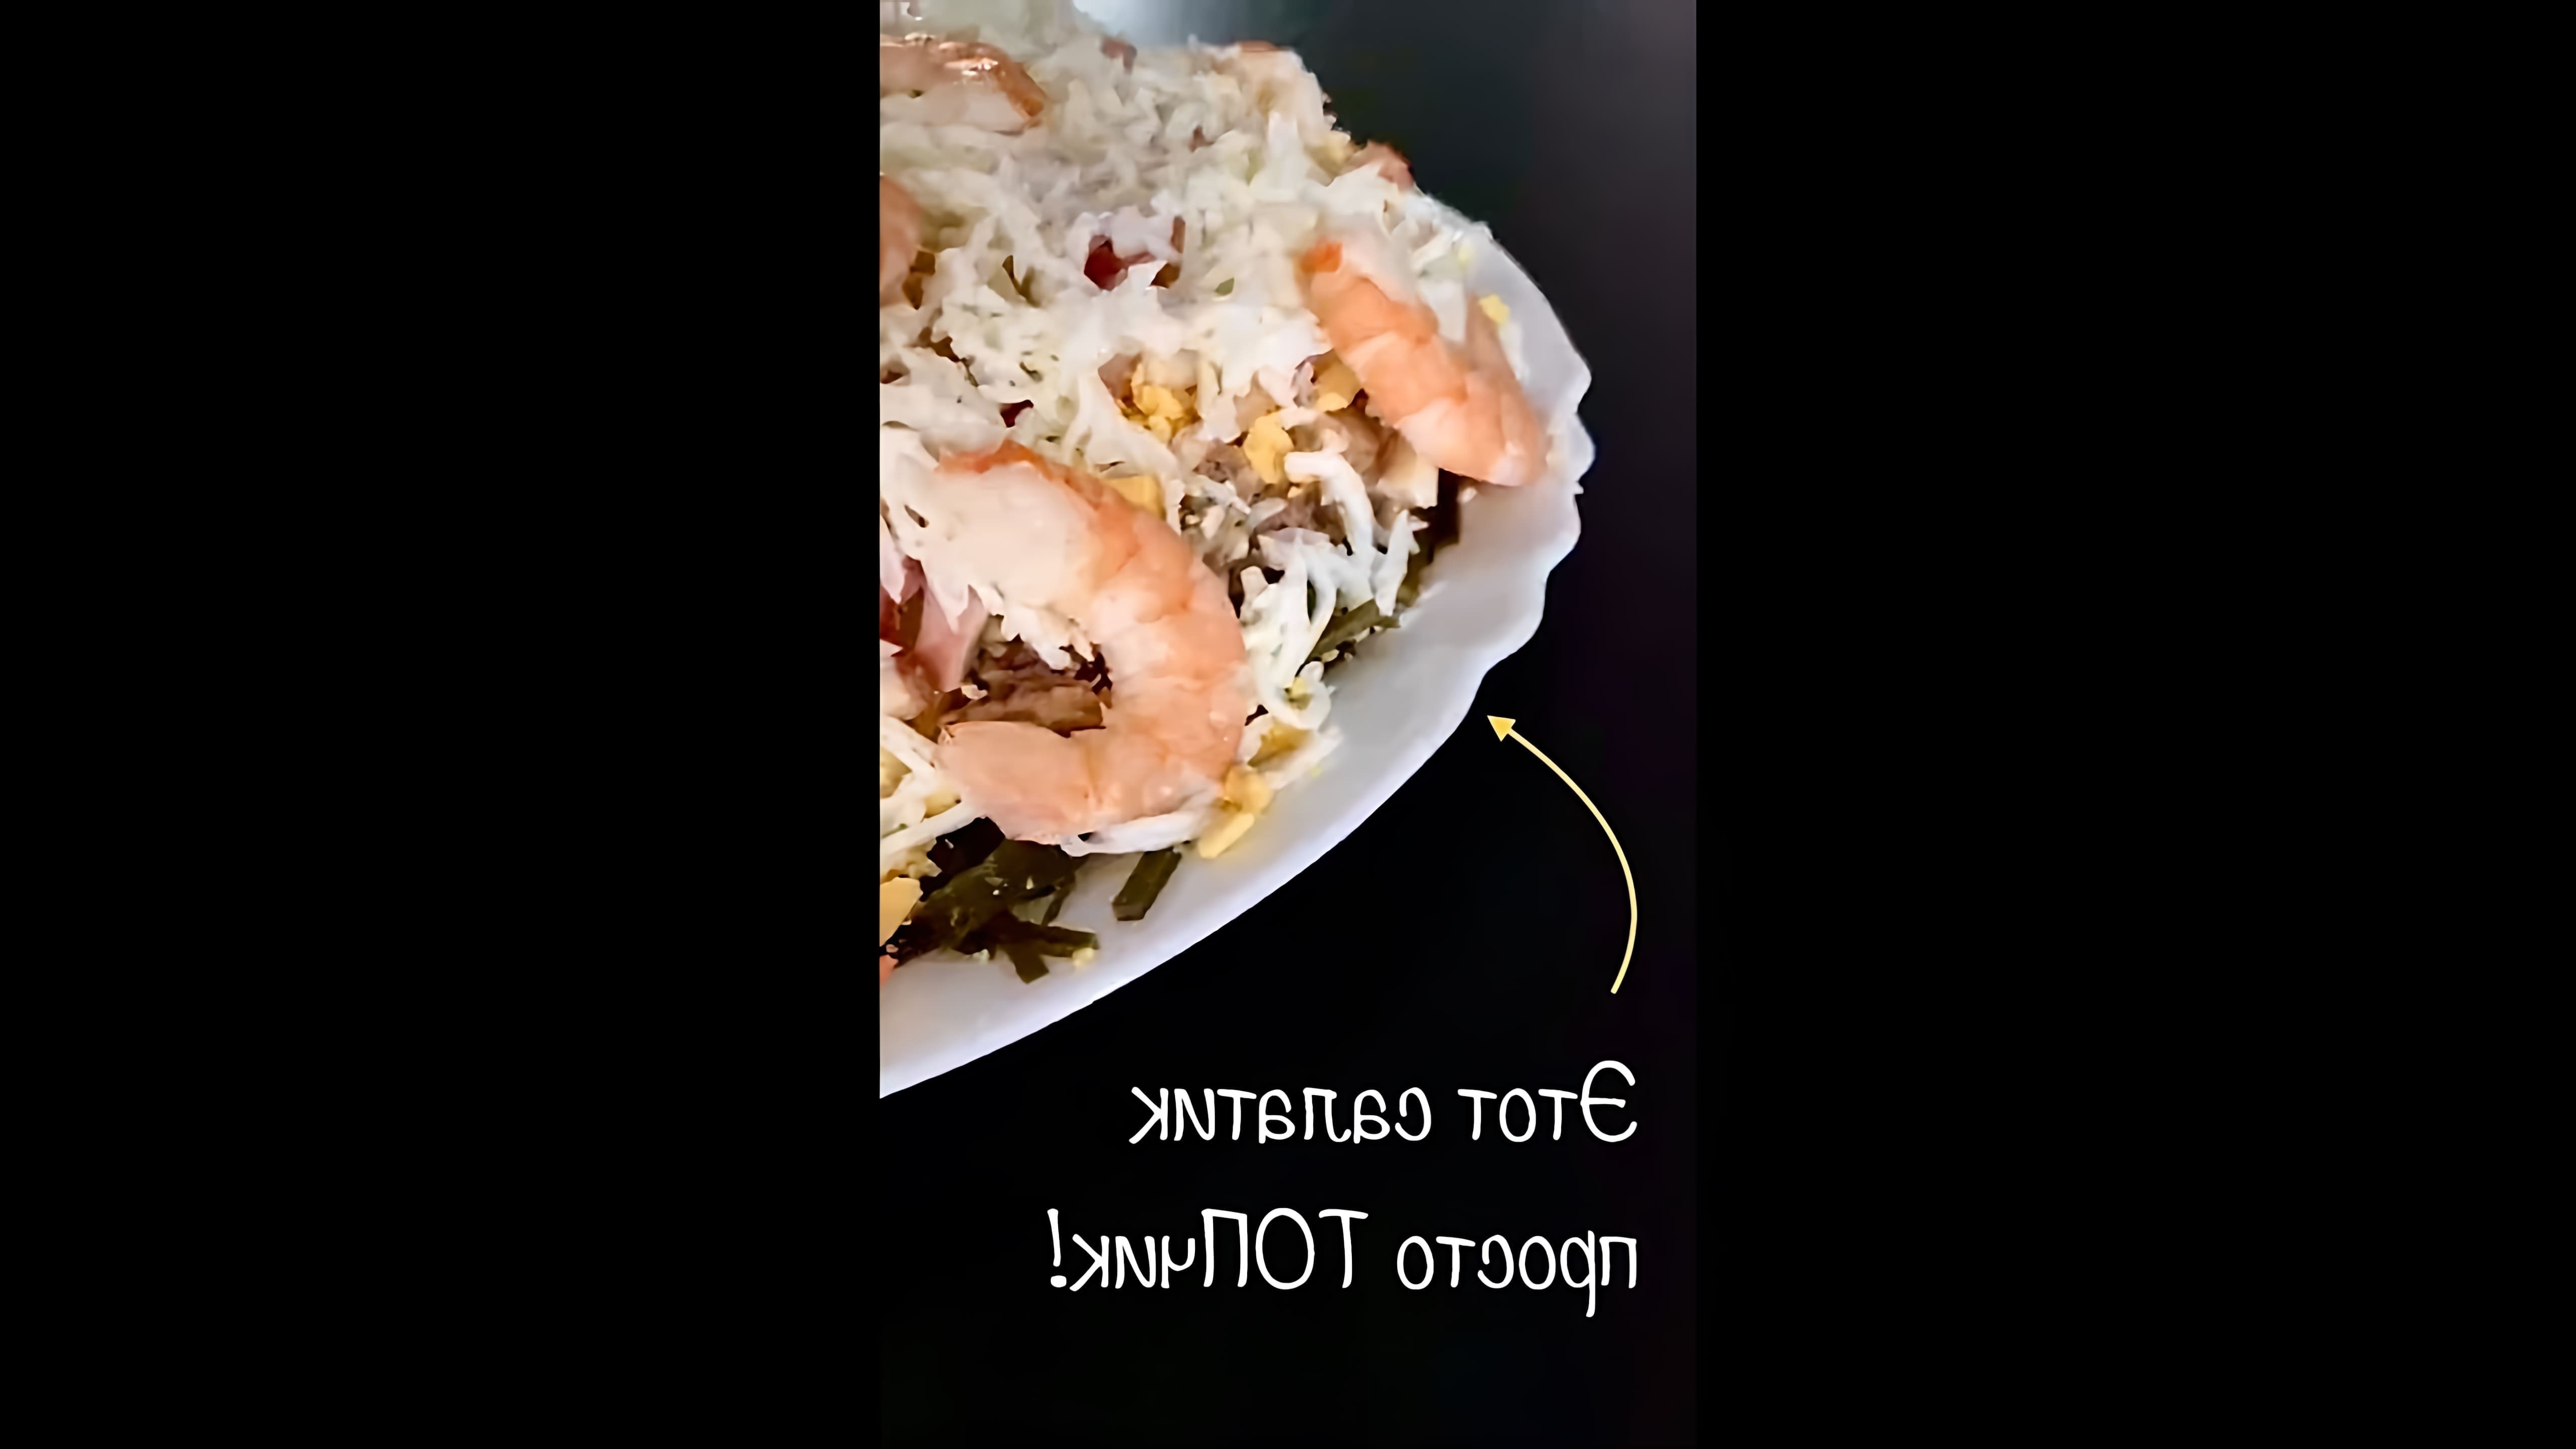 В этом видео демонстрируется рецепт салата с морской капусты, который можно приготовить каждую неделю